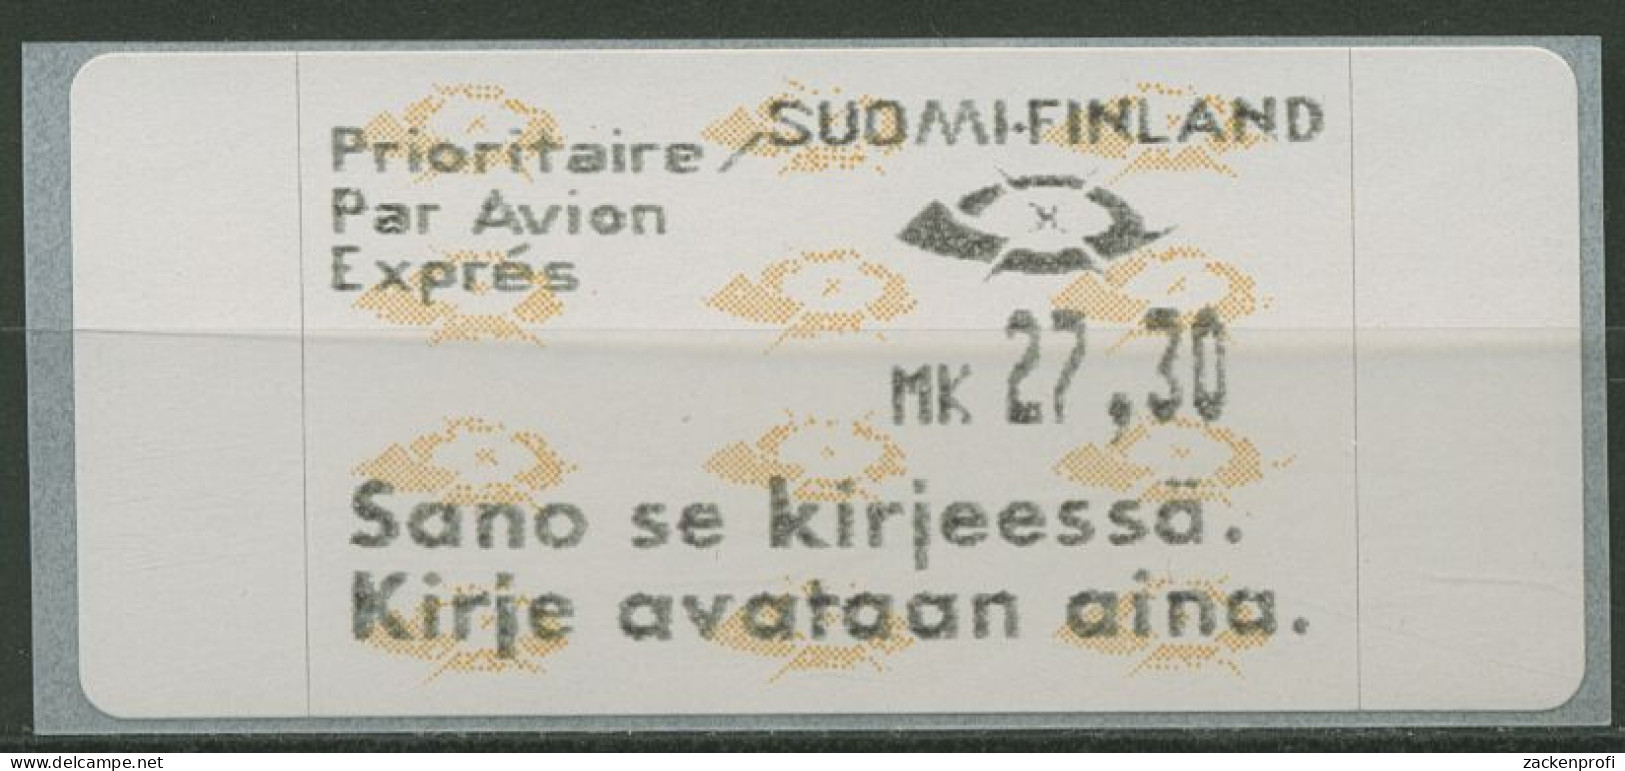 Finnland ATM 1993 Posthörner Einzelwert ATM 12.6 Z7 Postfrisch - Vignette [ATM]